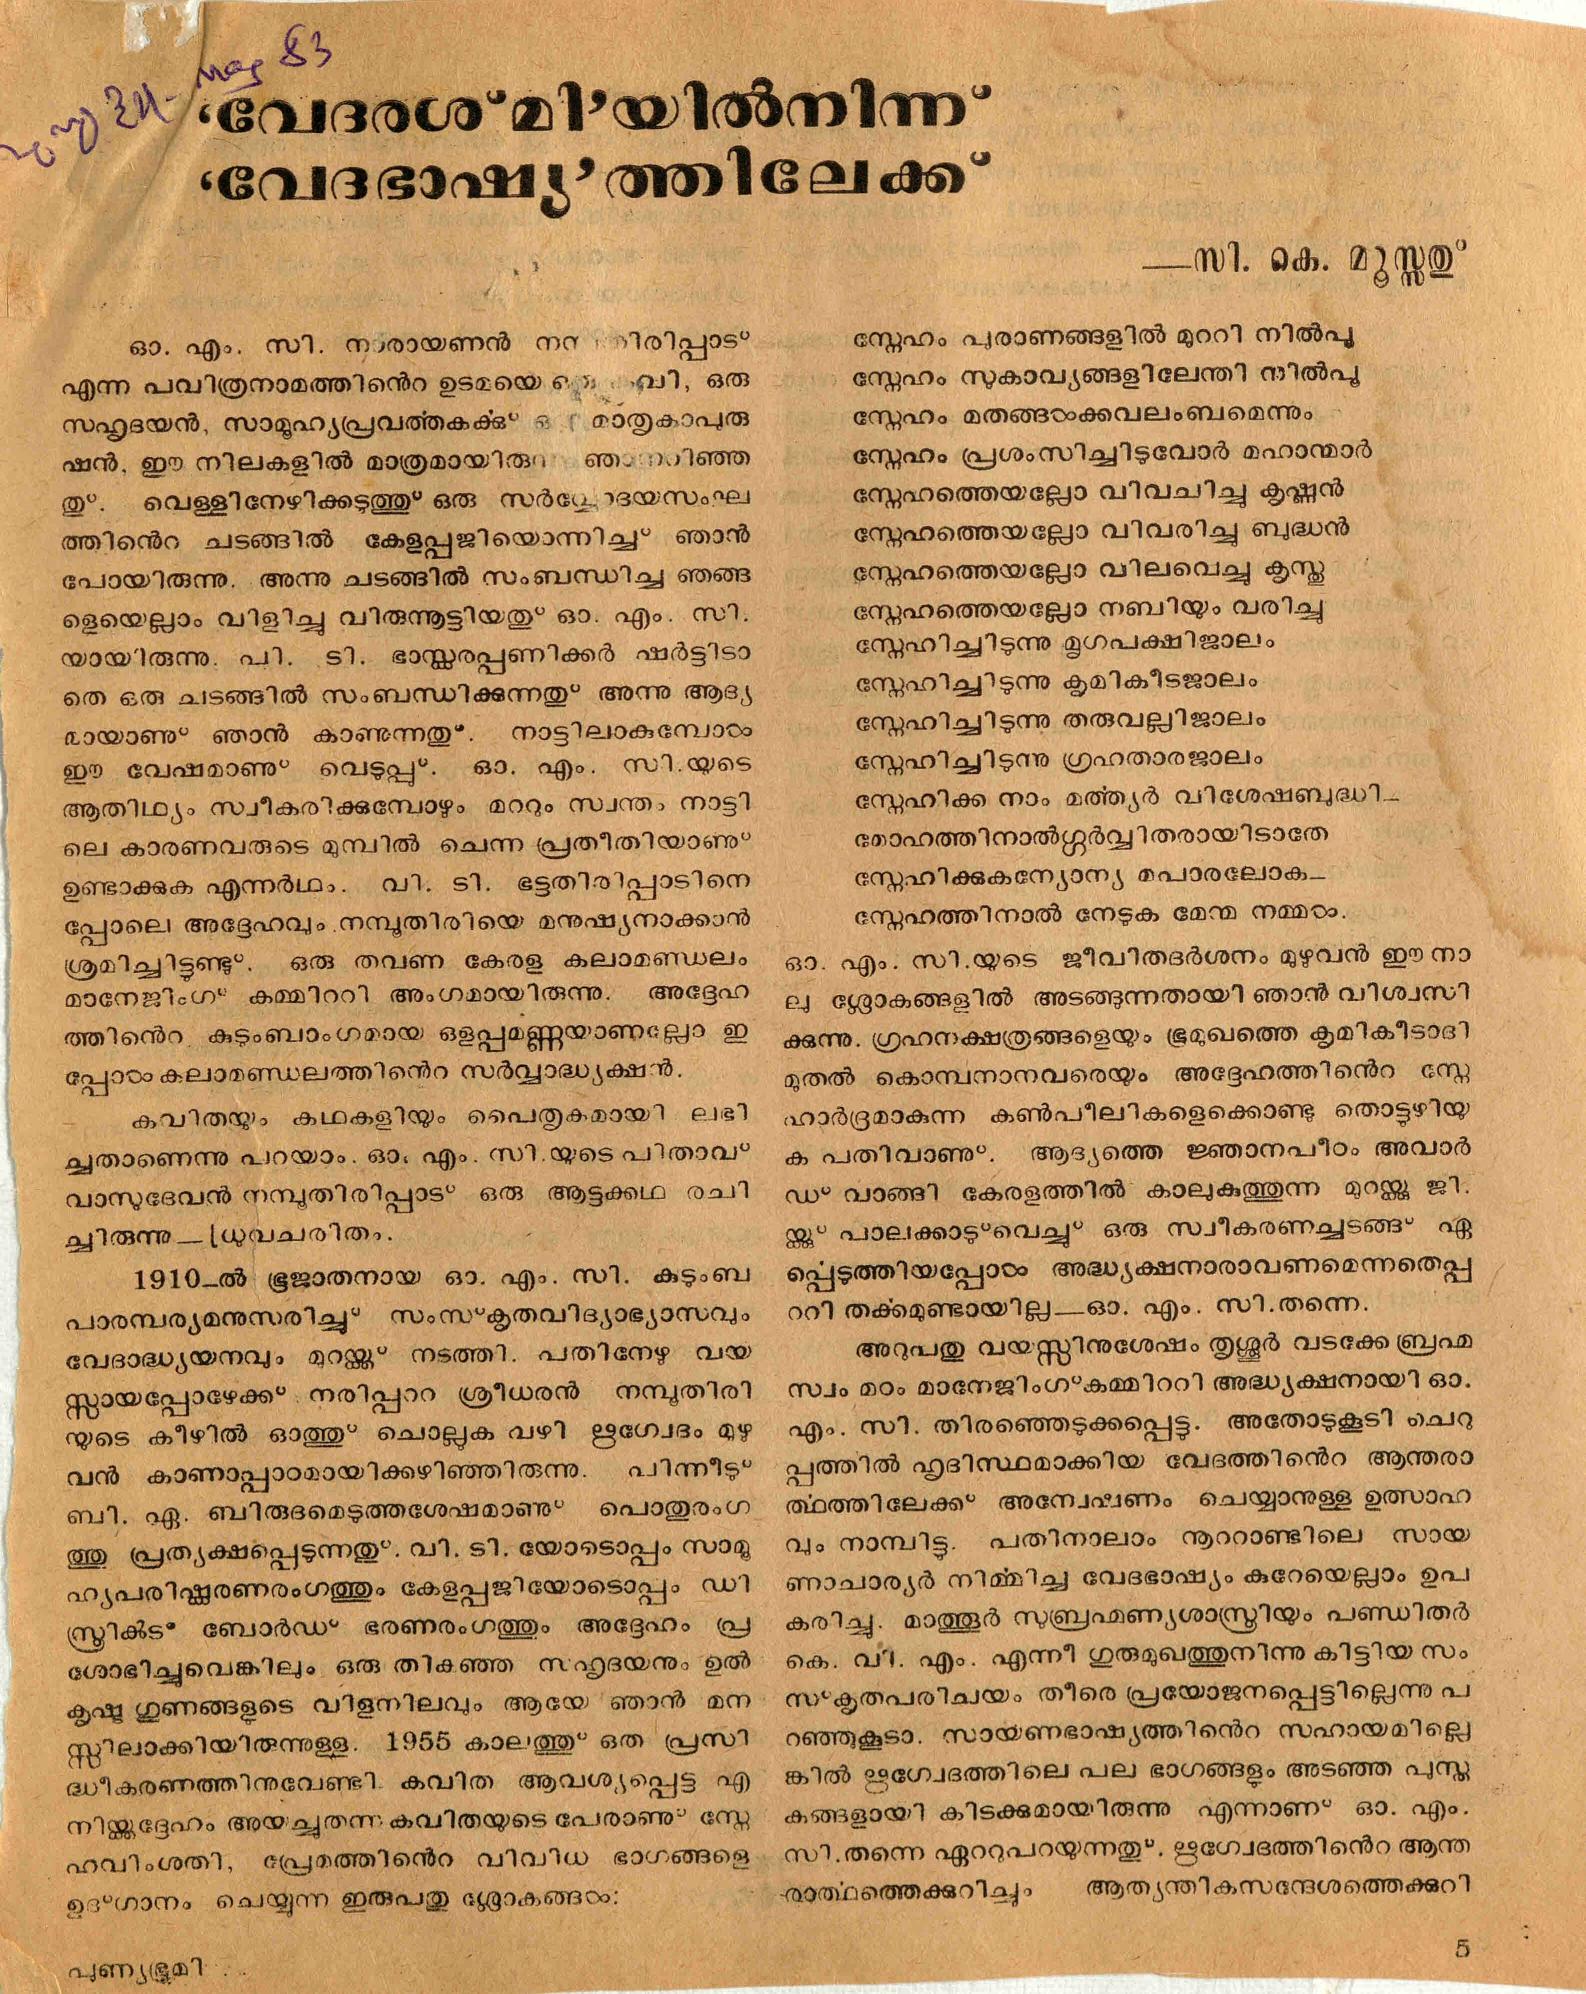 1983 - 'വേദരശ്മി'യിൽ നിന്ന് 'വേദഭാഷ്യ'ത്തിലേക്ക് - സി. കെ. മൂസ്സത്